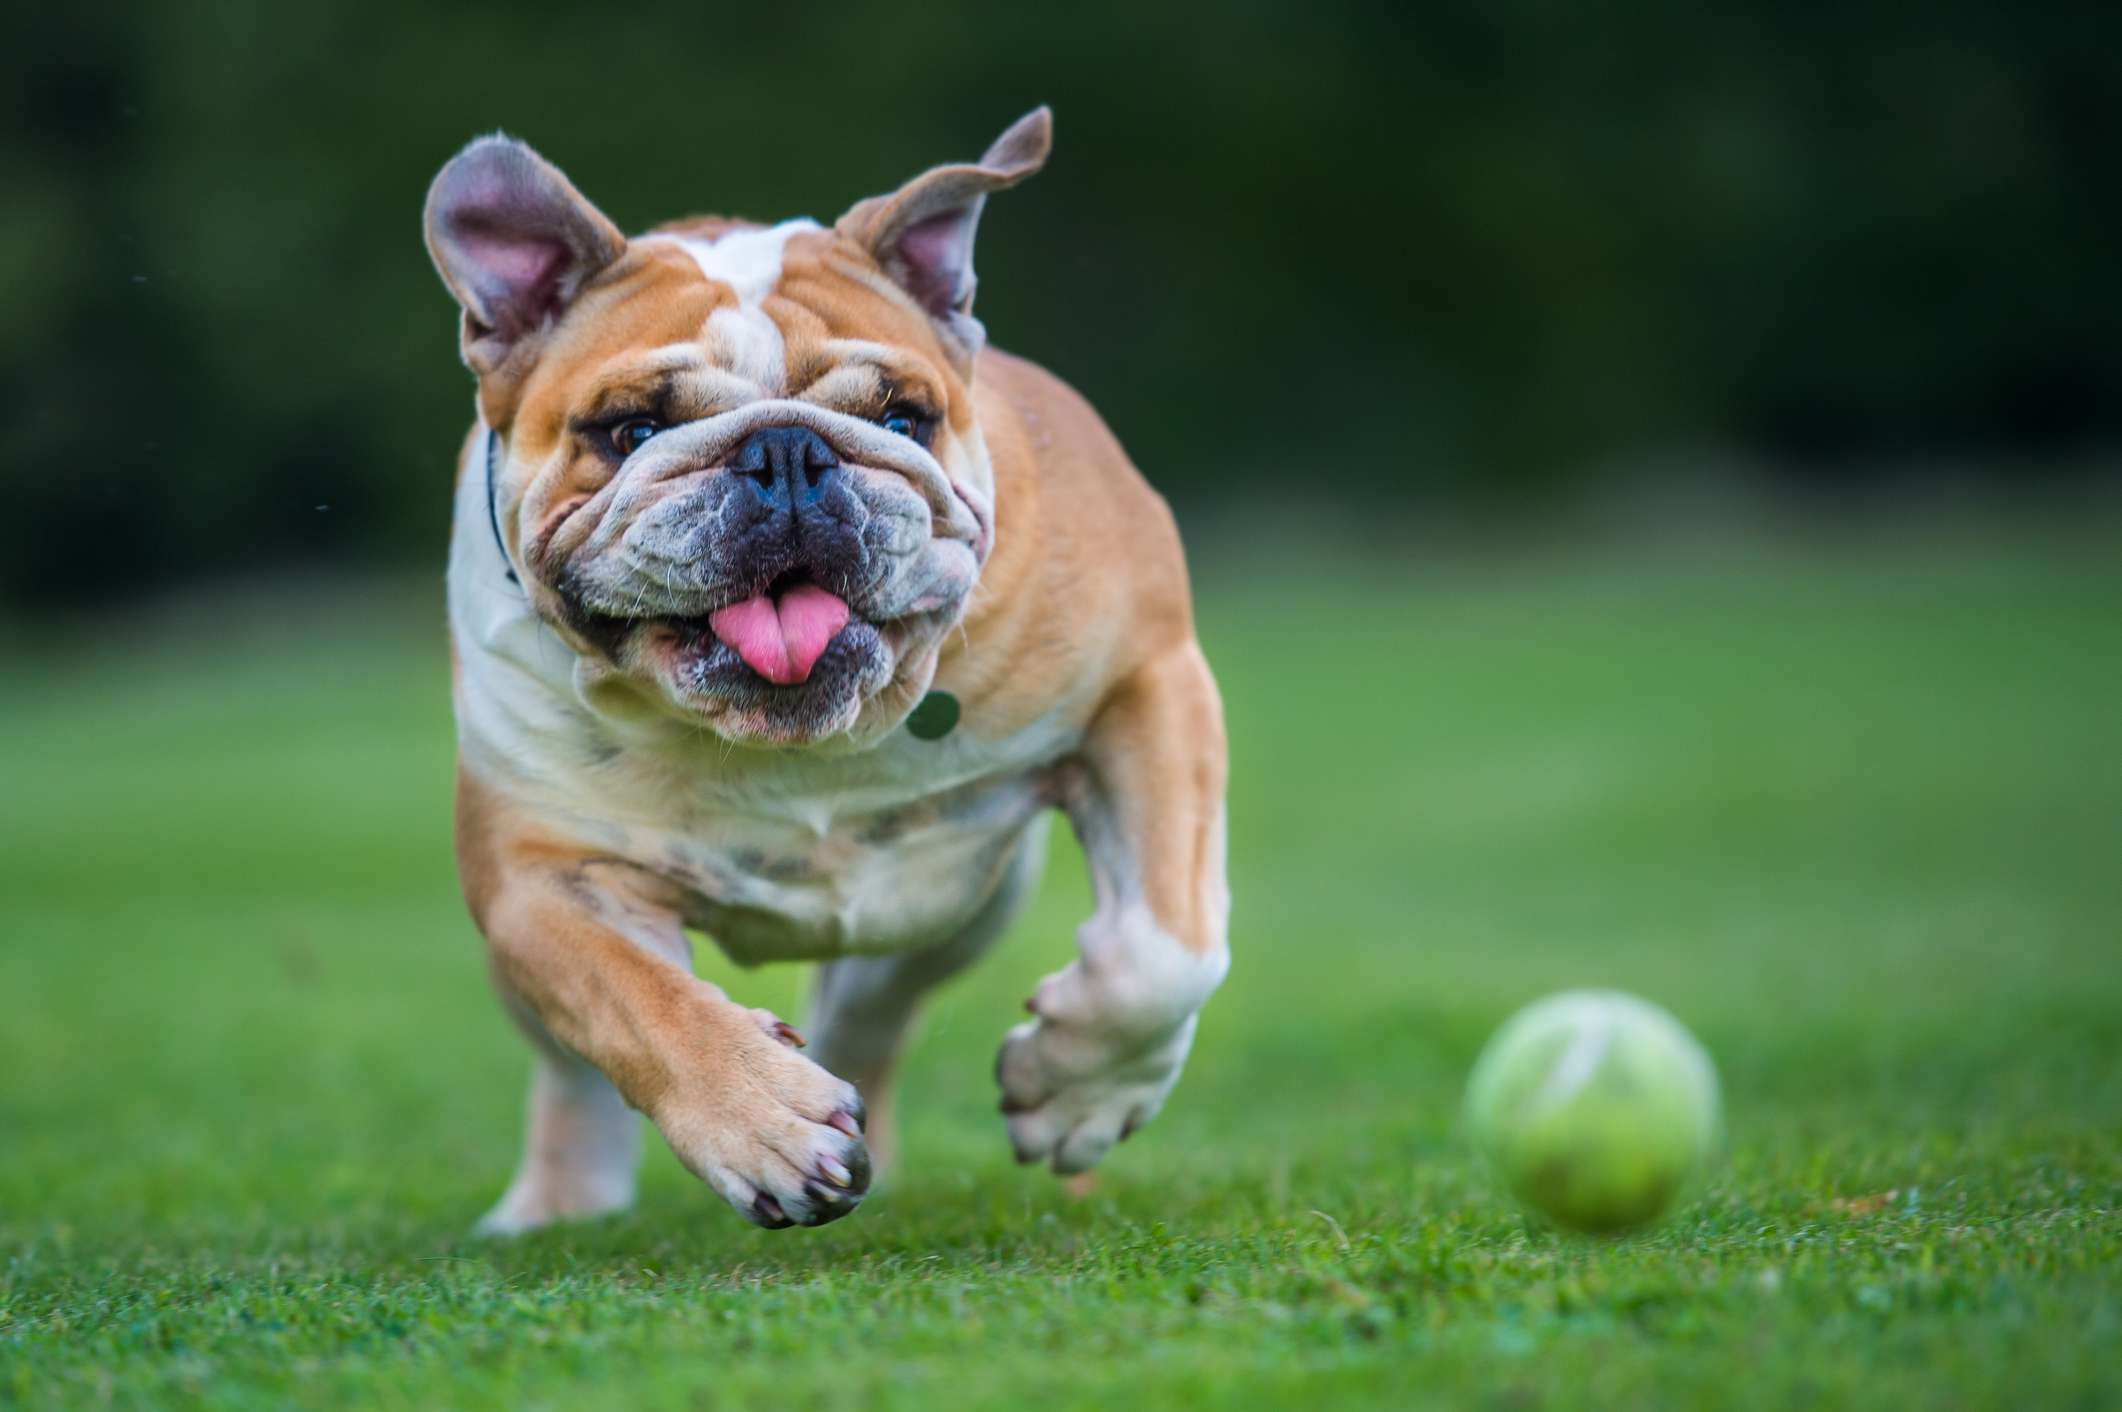 Bulldog running for a ball on grass